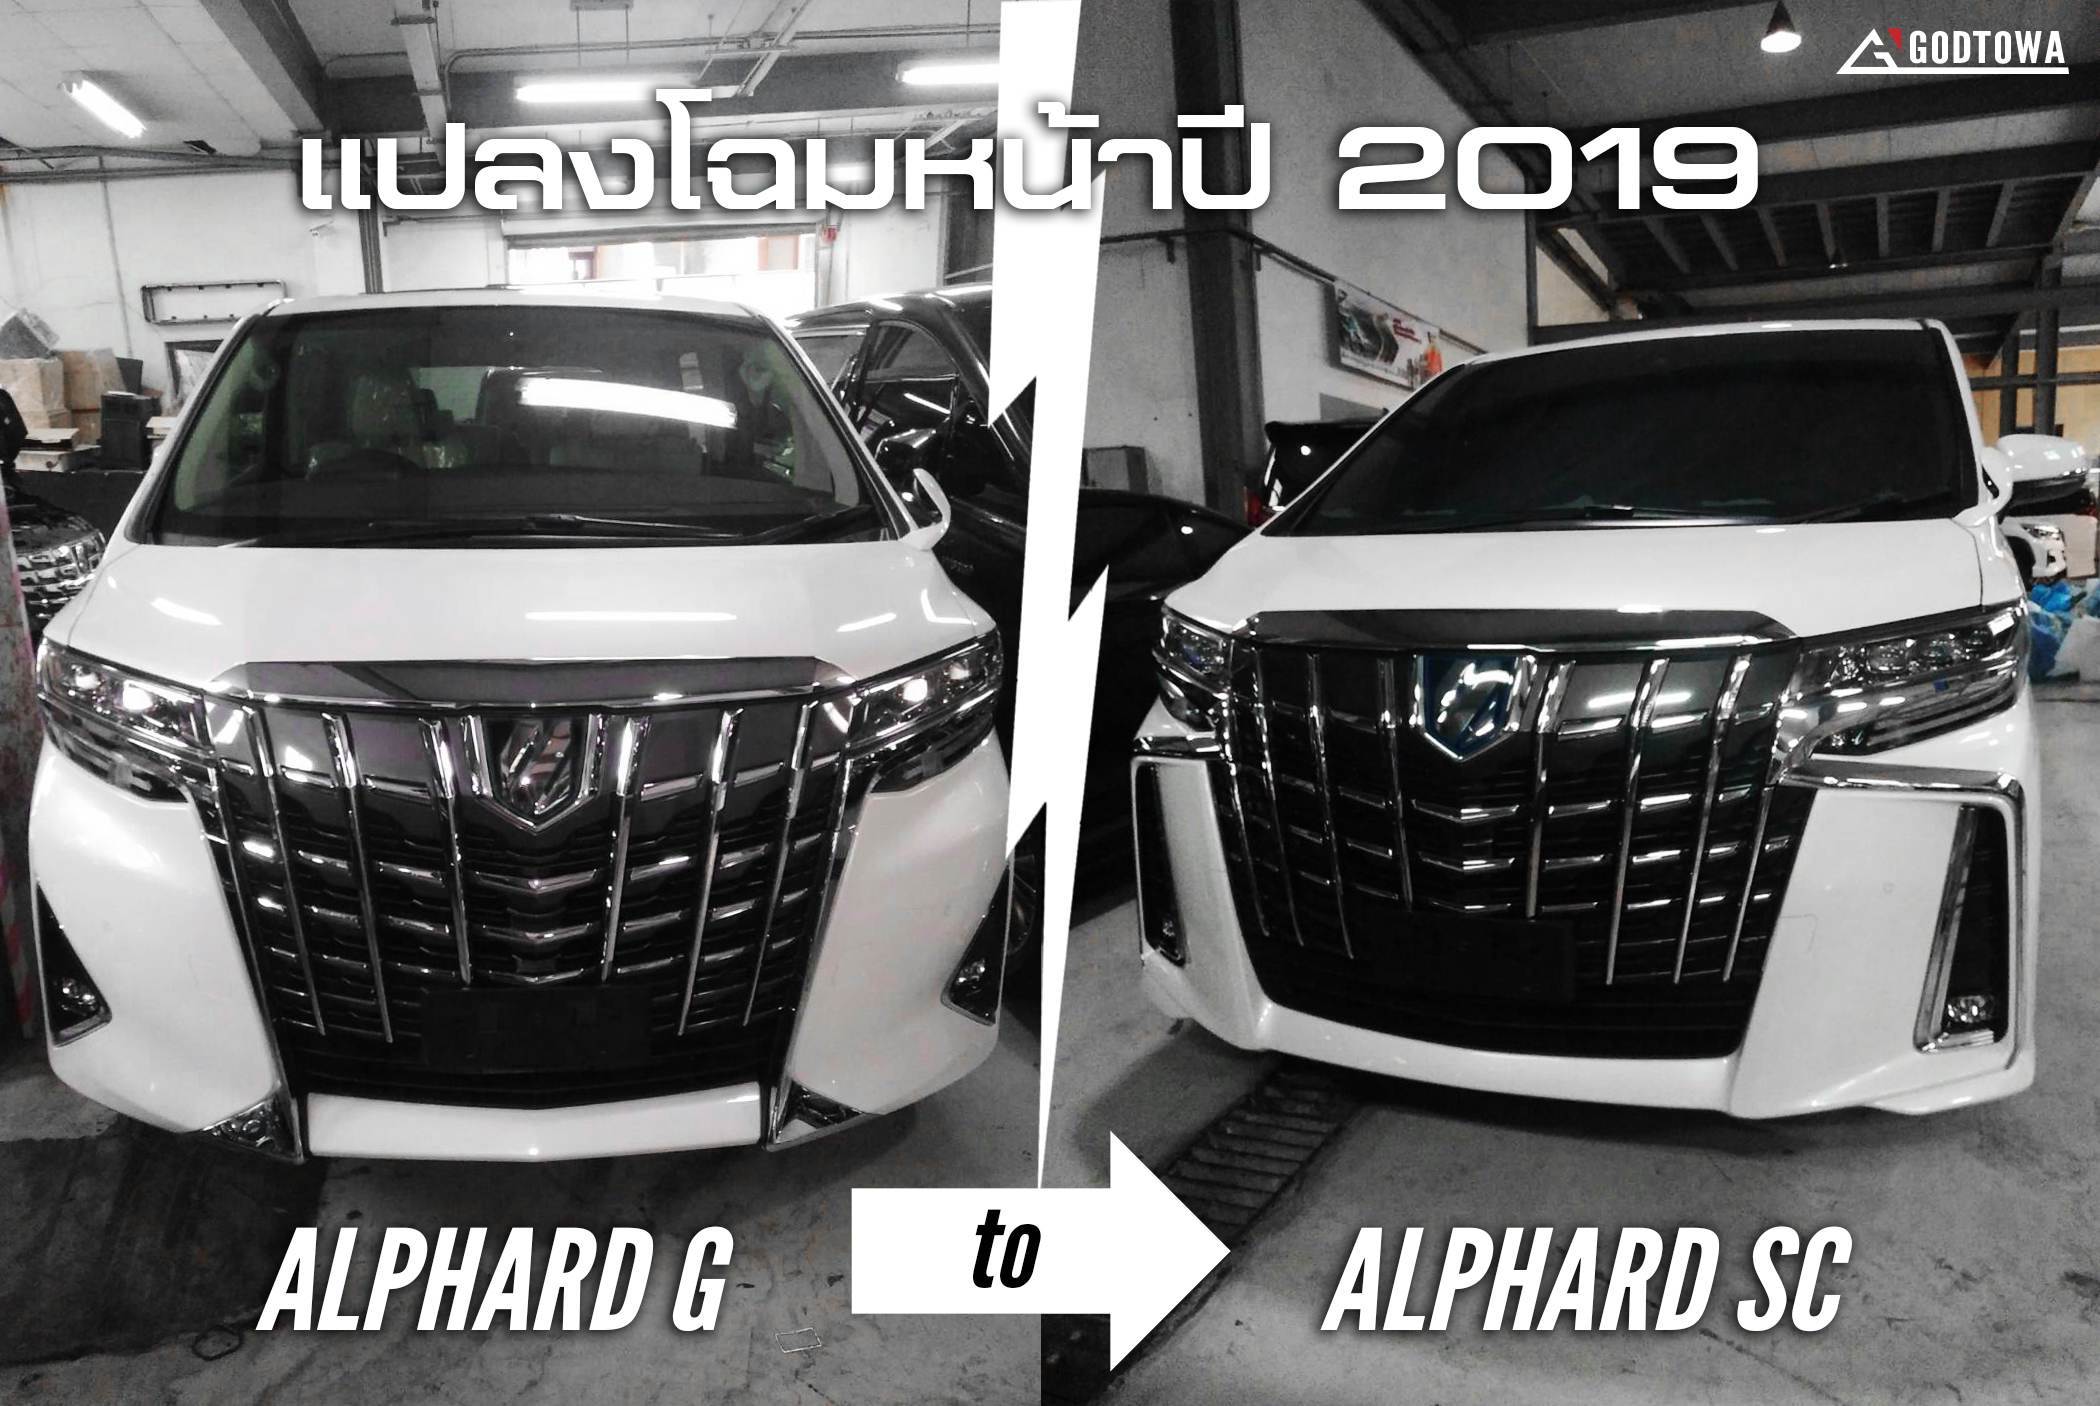 แปลงโฉมหน้า ALPHARD G 2019 เป็น ALPHARD SC 2019